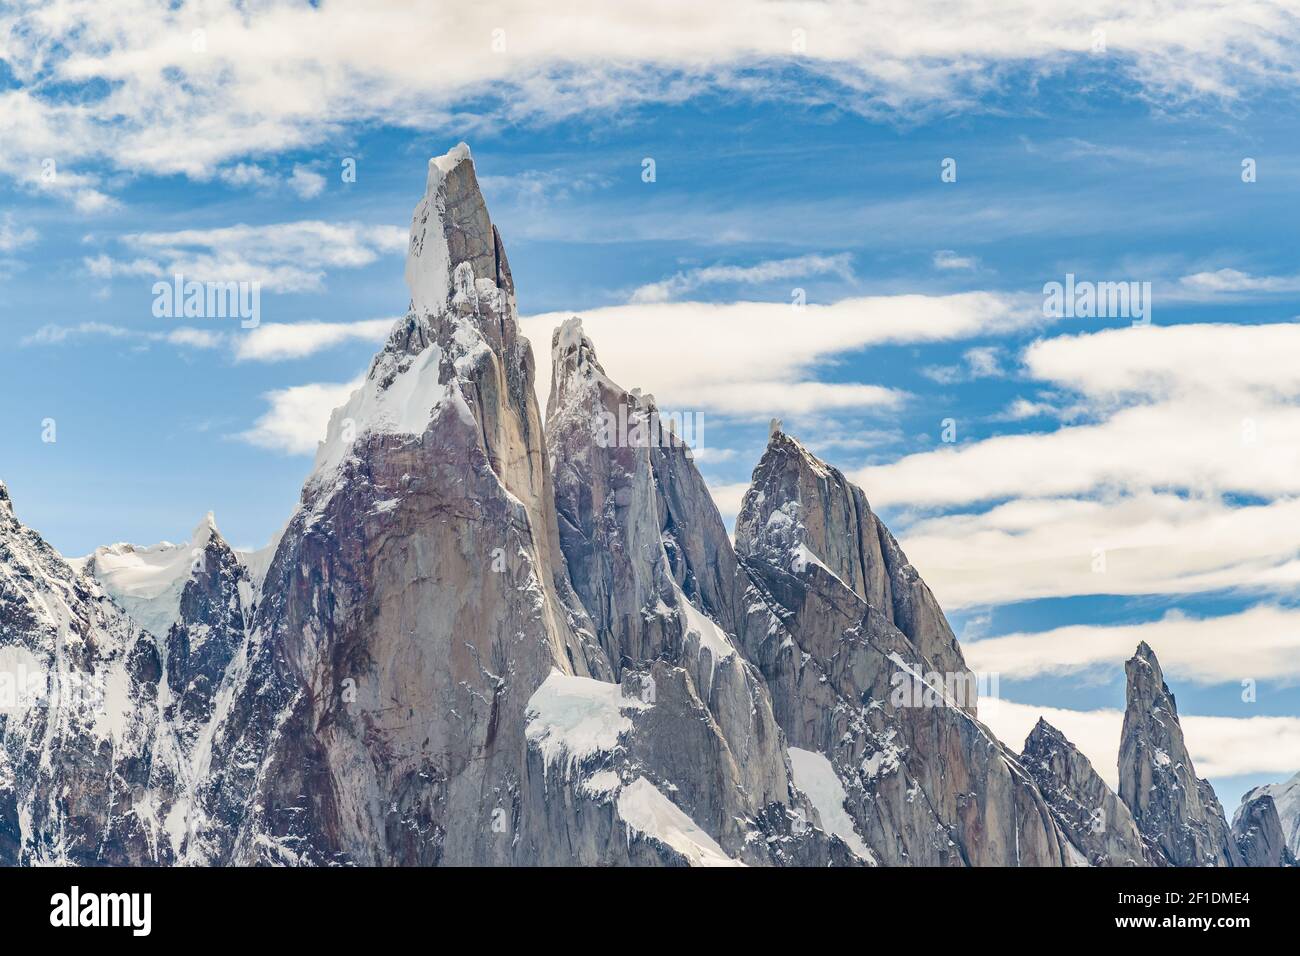 Cerro Torre Parque Nacional Los Glaciares. Argentina Stock Photo